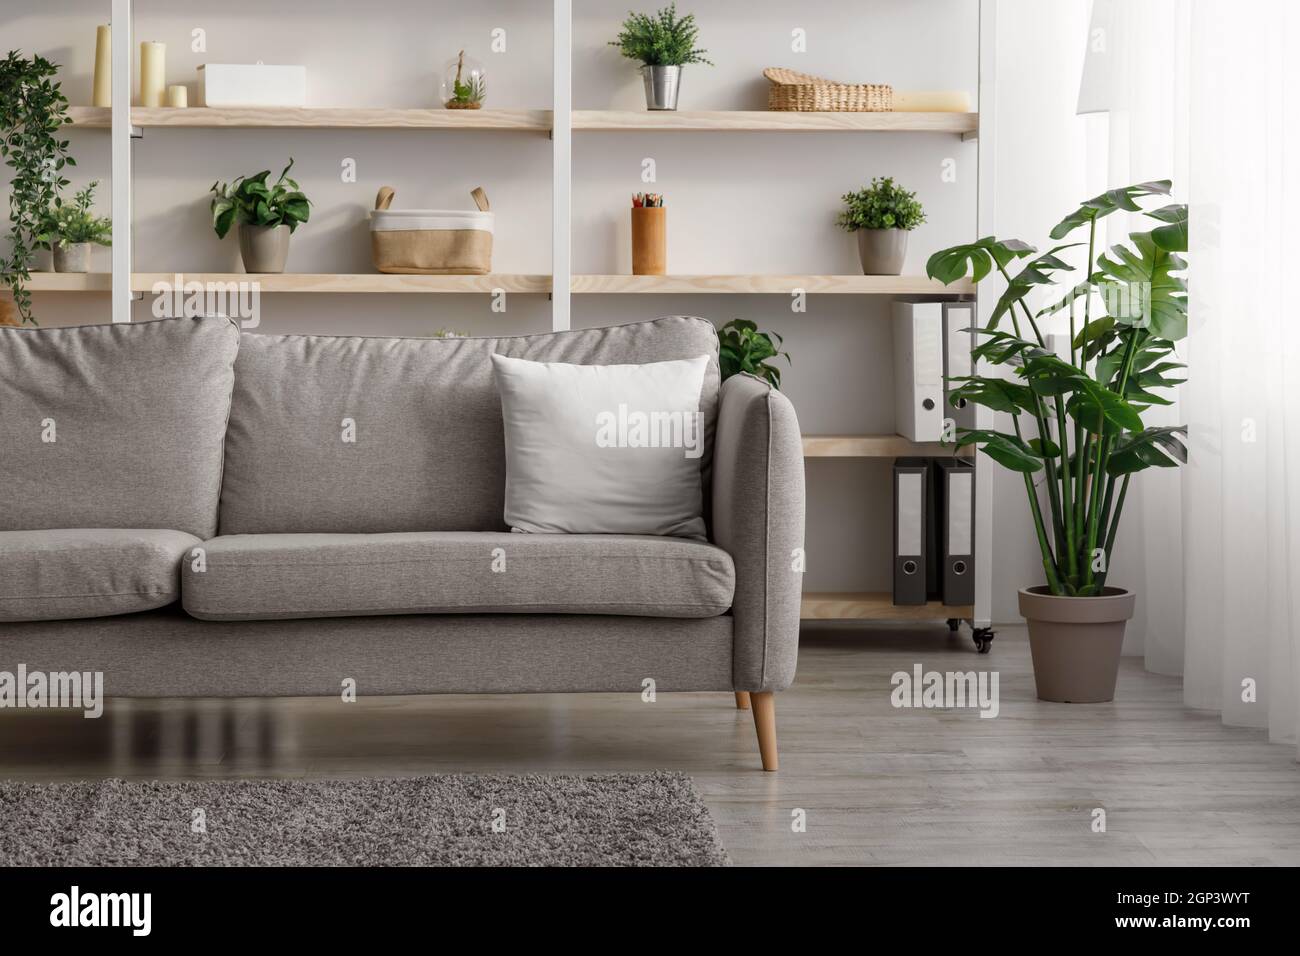 Intérieur de salon moderne avec canapé, étagères, accessoires et plantes  dans des pots à la maison, intérieur. Design scandinave simple dans la  maison, mobilier confortable Photo Stock - Alamy